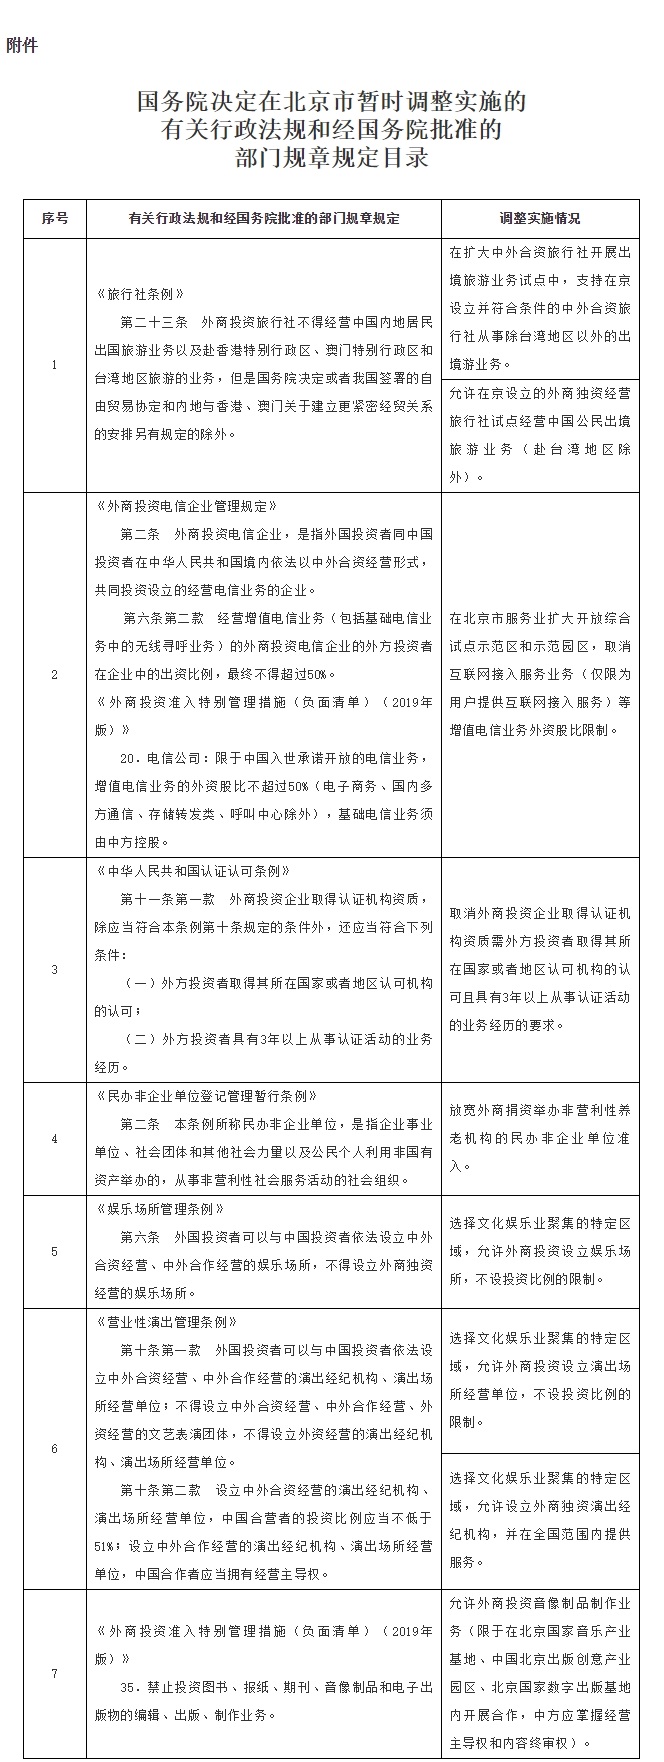 附件：国务院决定在北京市暂时调整实施的有关行政法规和经国务院批准的部门规章规定目录.jpg